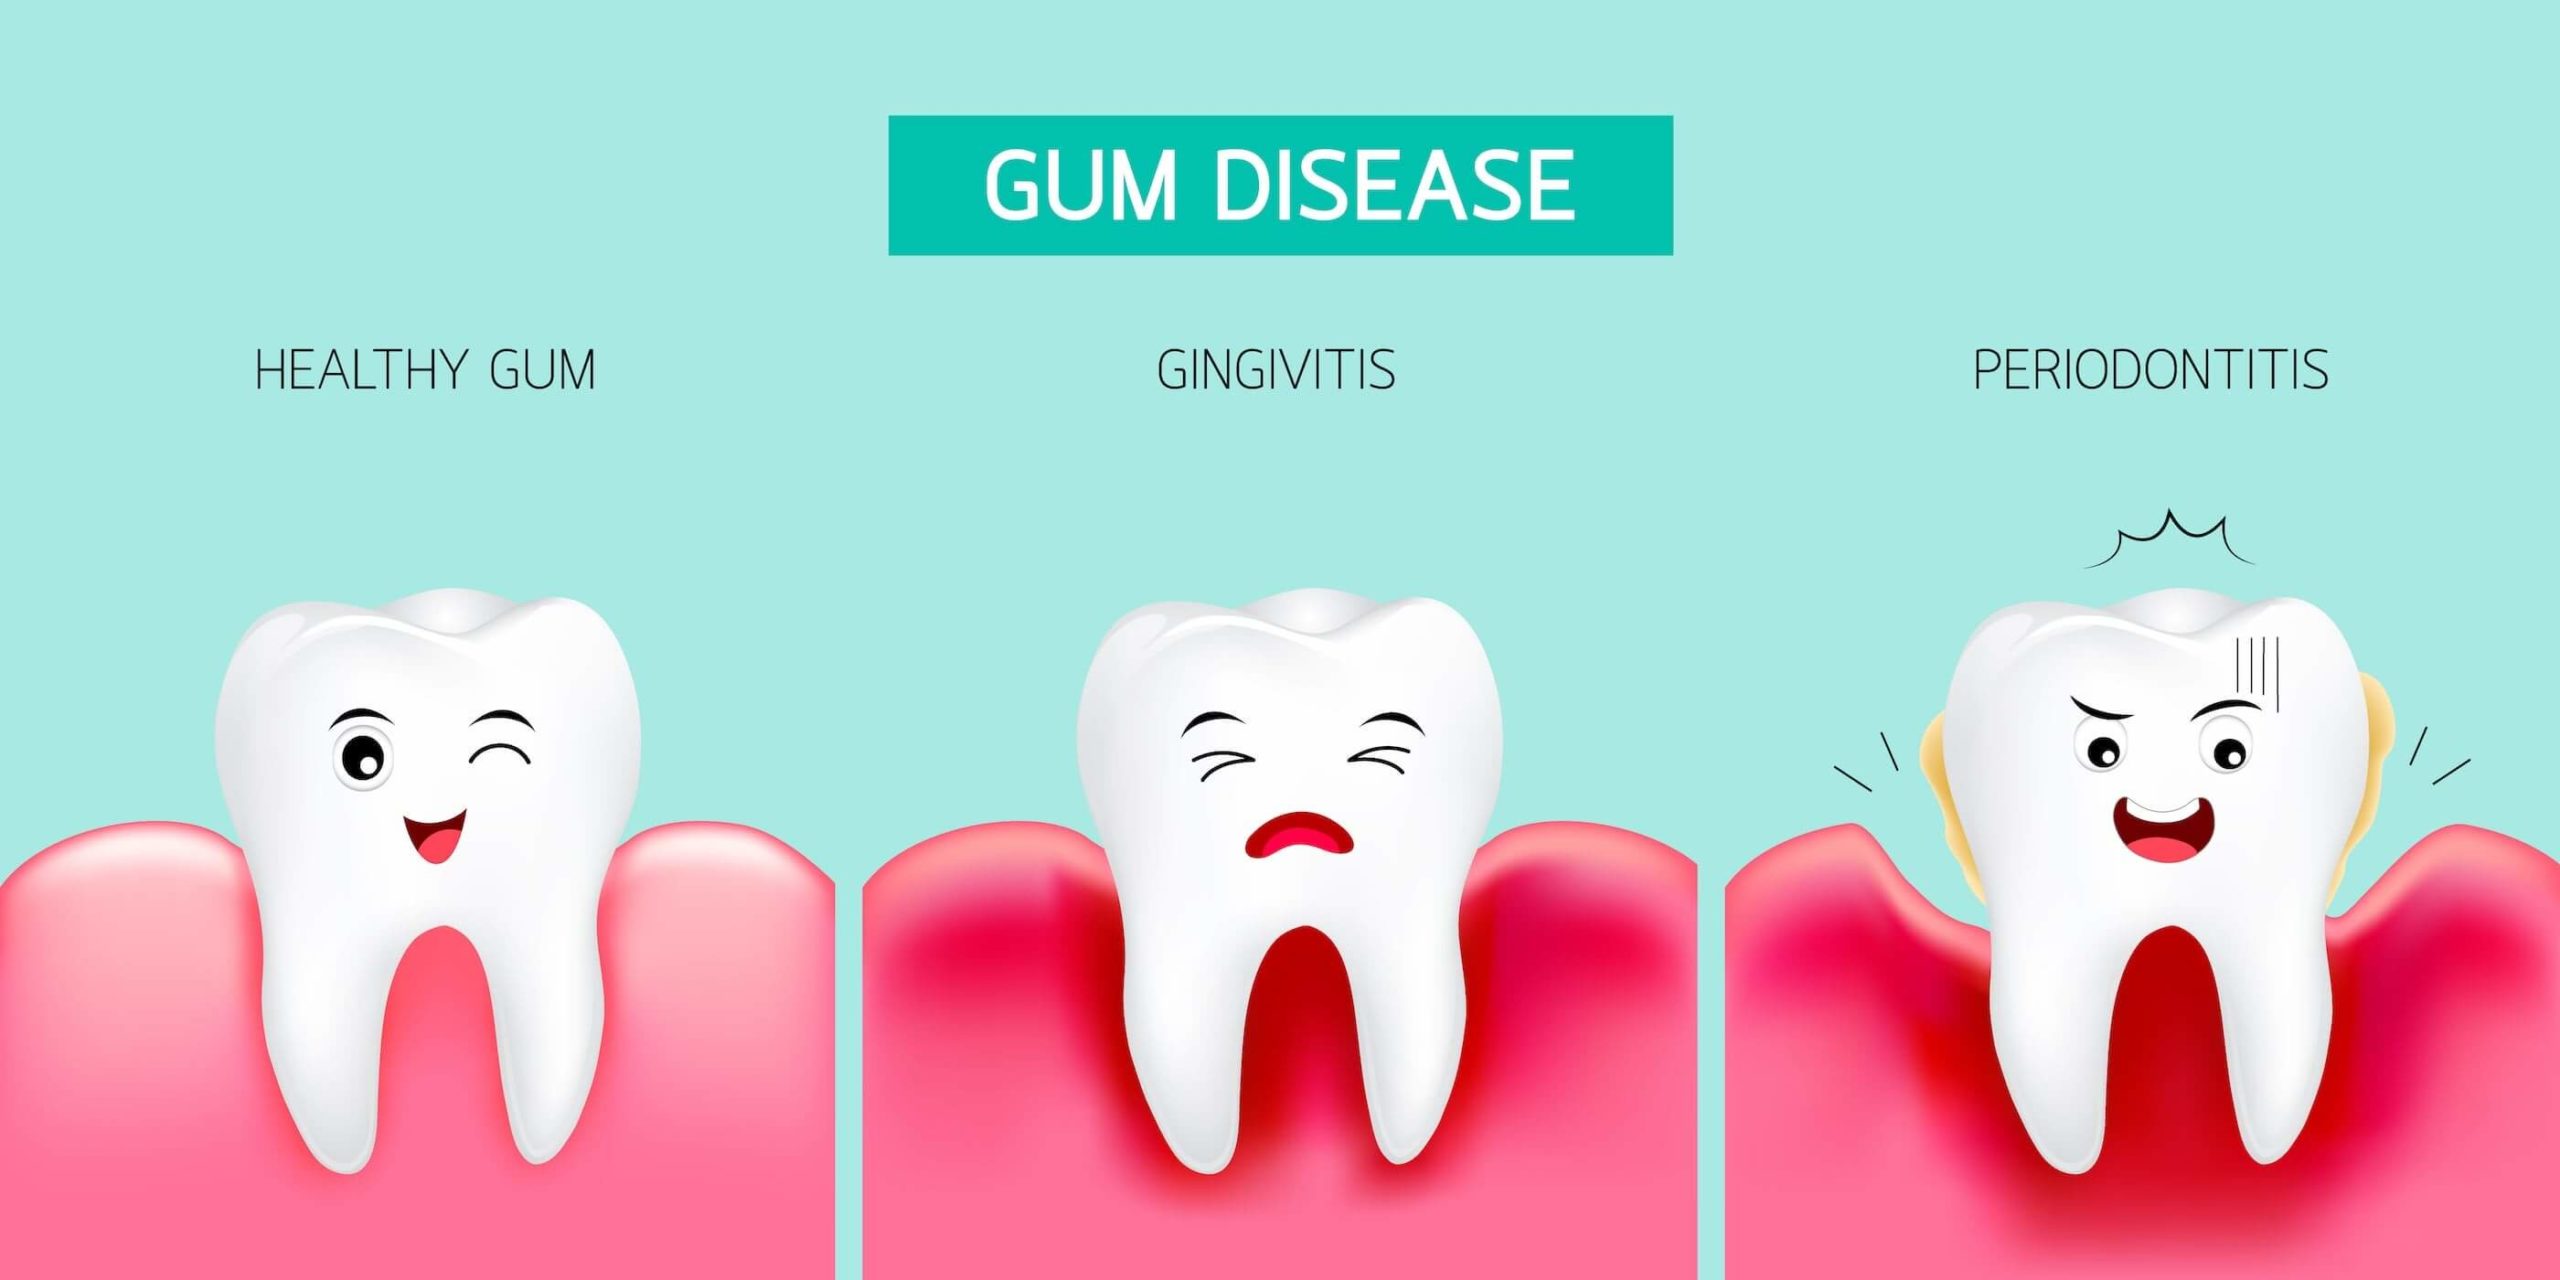 Progression of gum disease